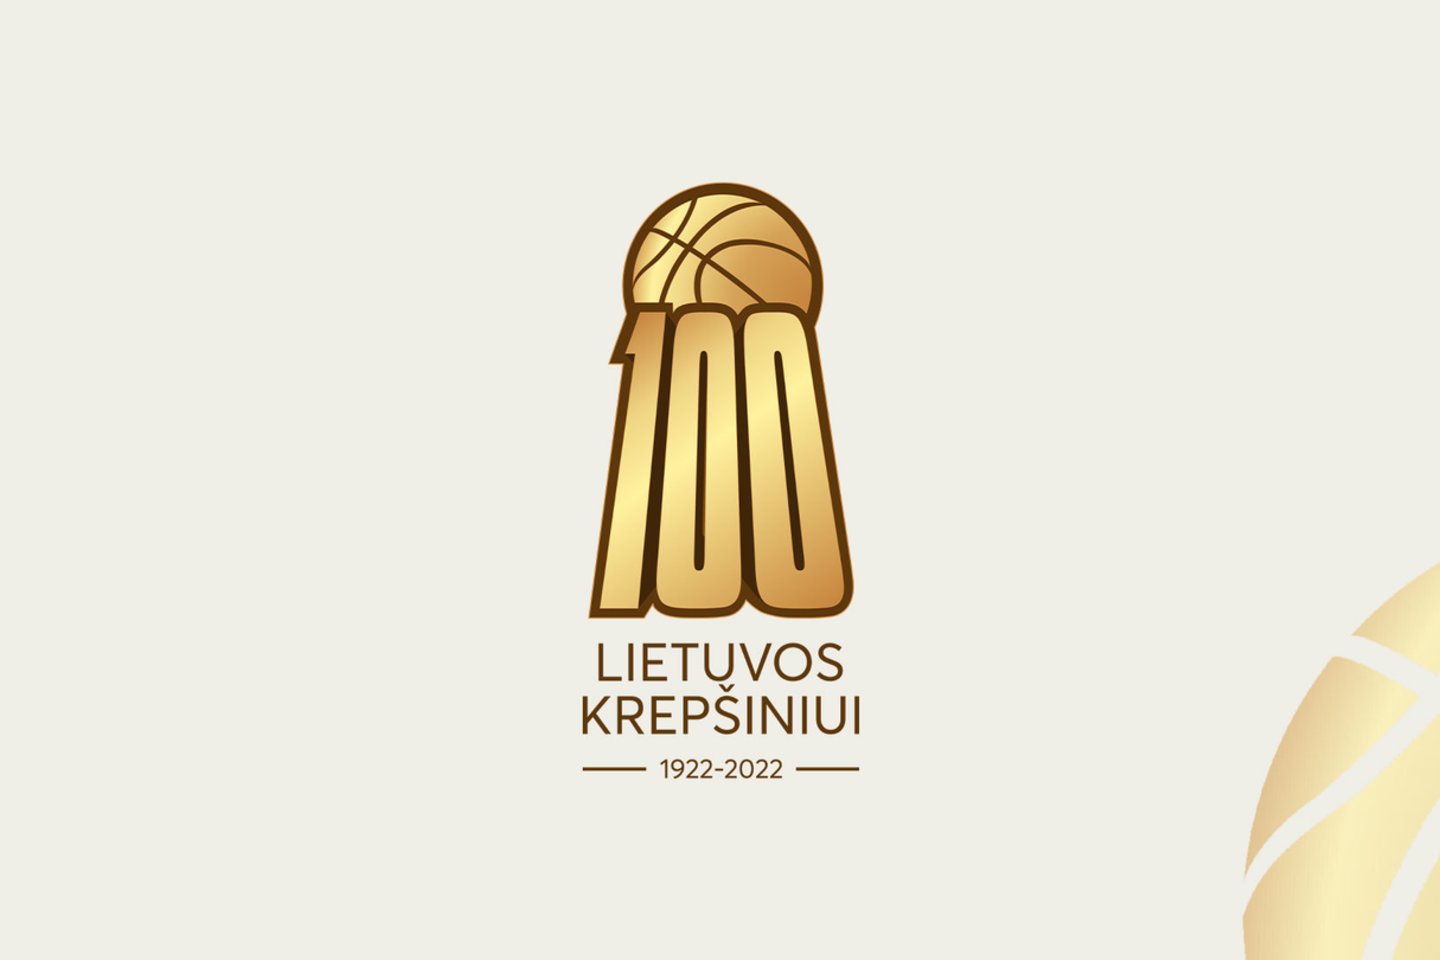  Lietuvos krepšinio šimtmečio jubiliejui įamžinti – specialus logotipas ir metai skirti krepšiniui.<br> LKF nuotr.